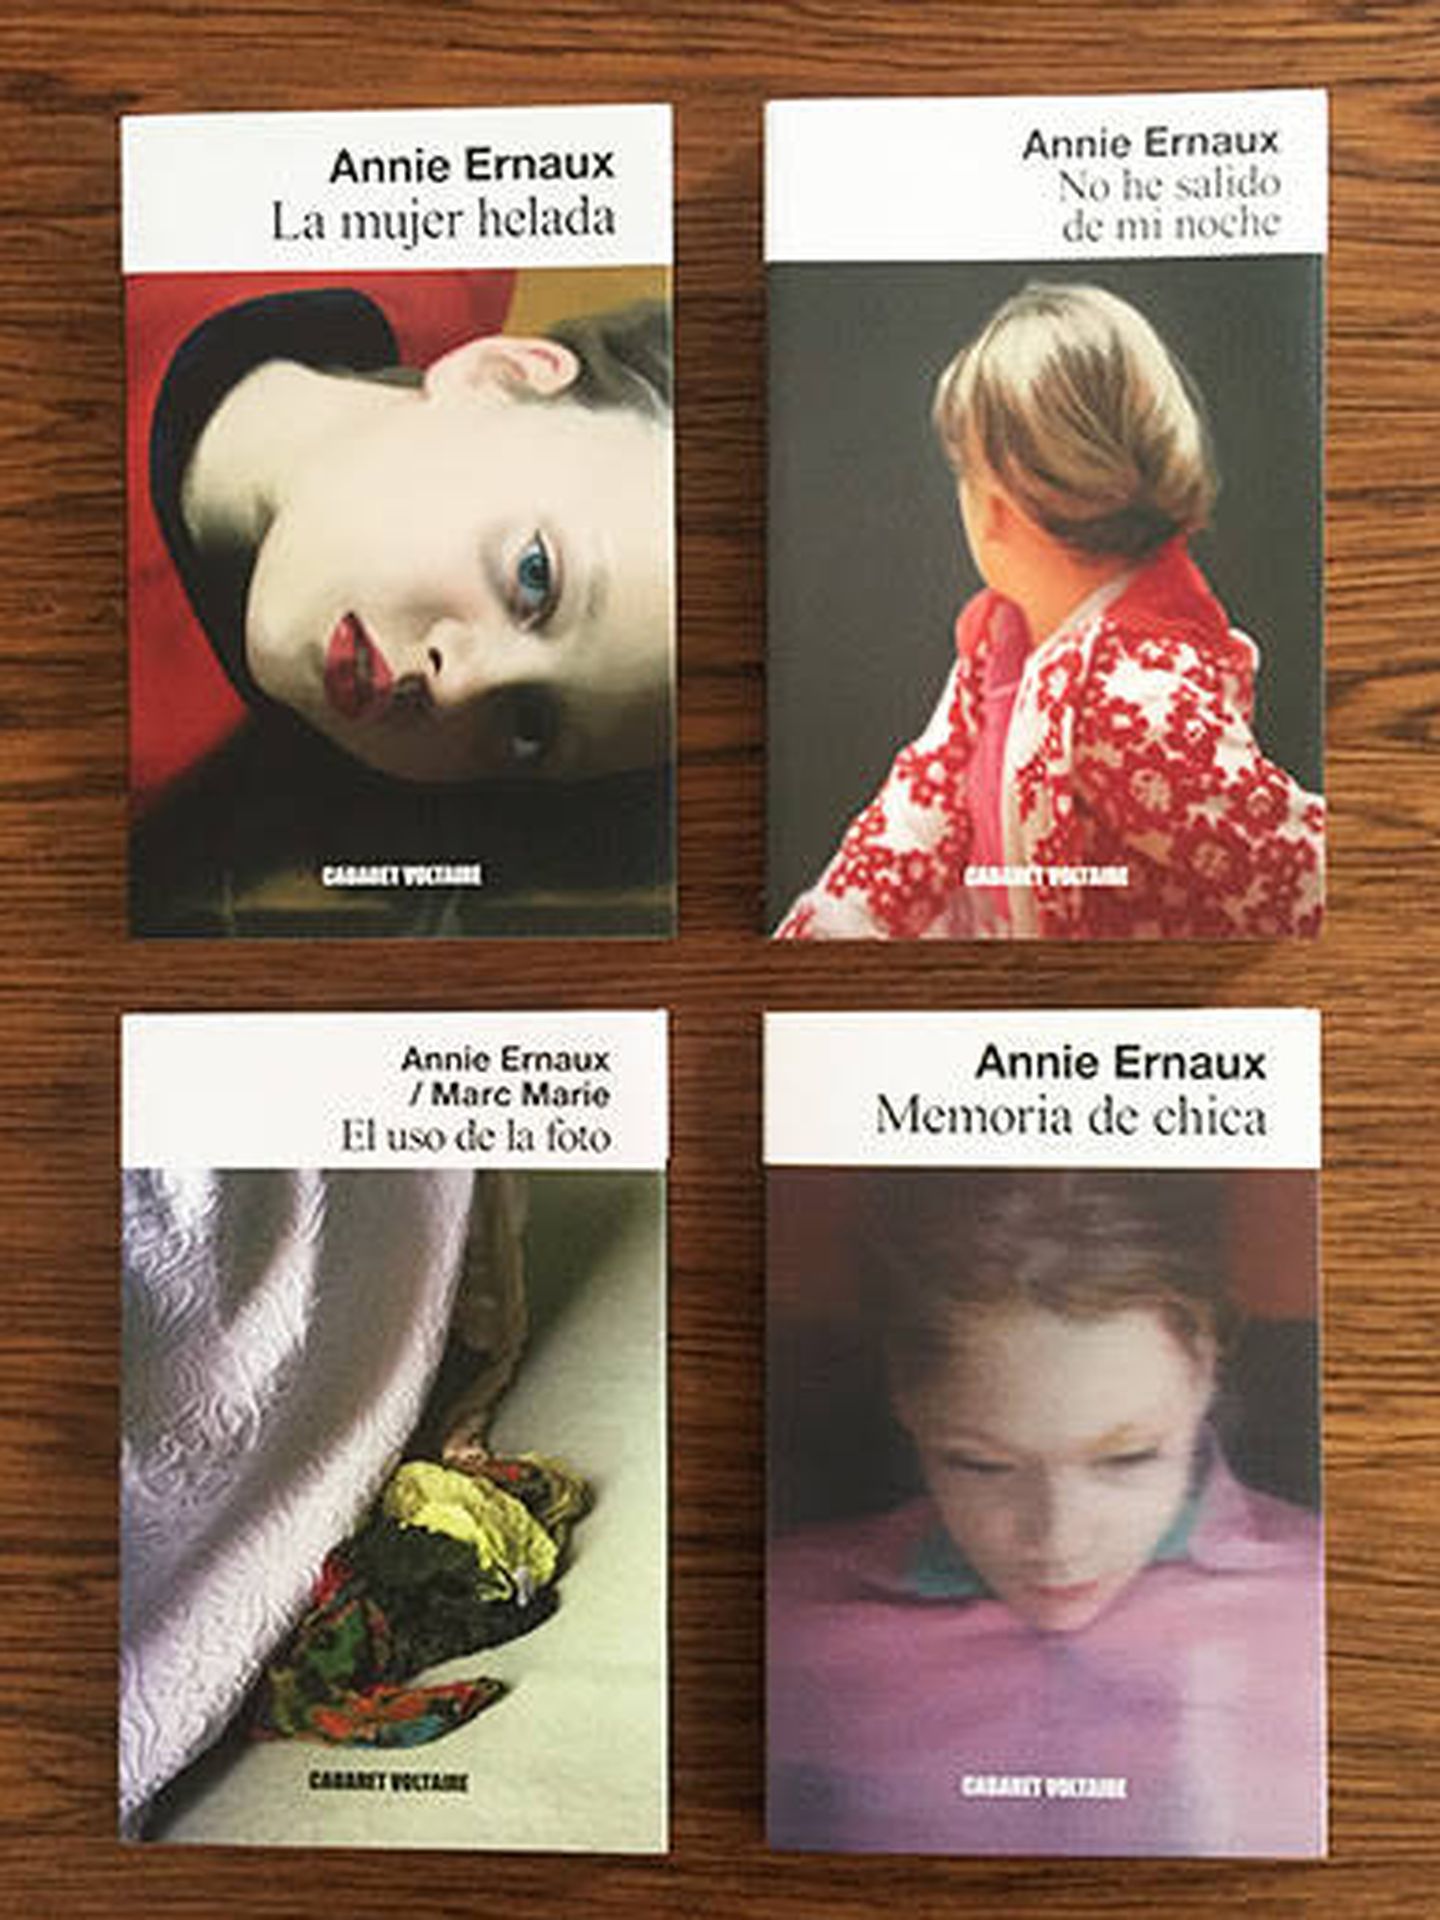 Los libros de Annie Ernaux en Cabaret Voltaire